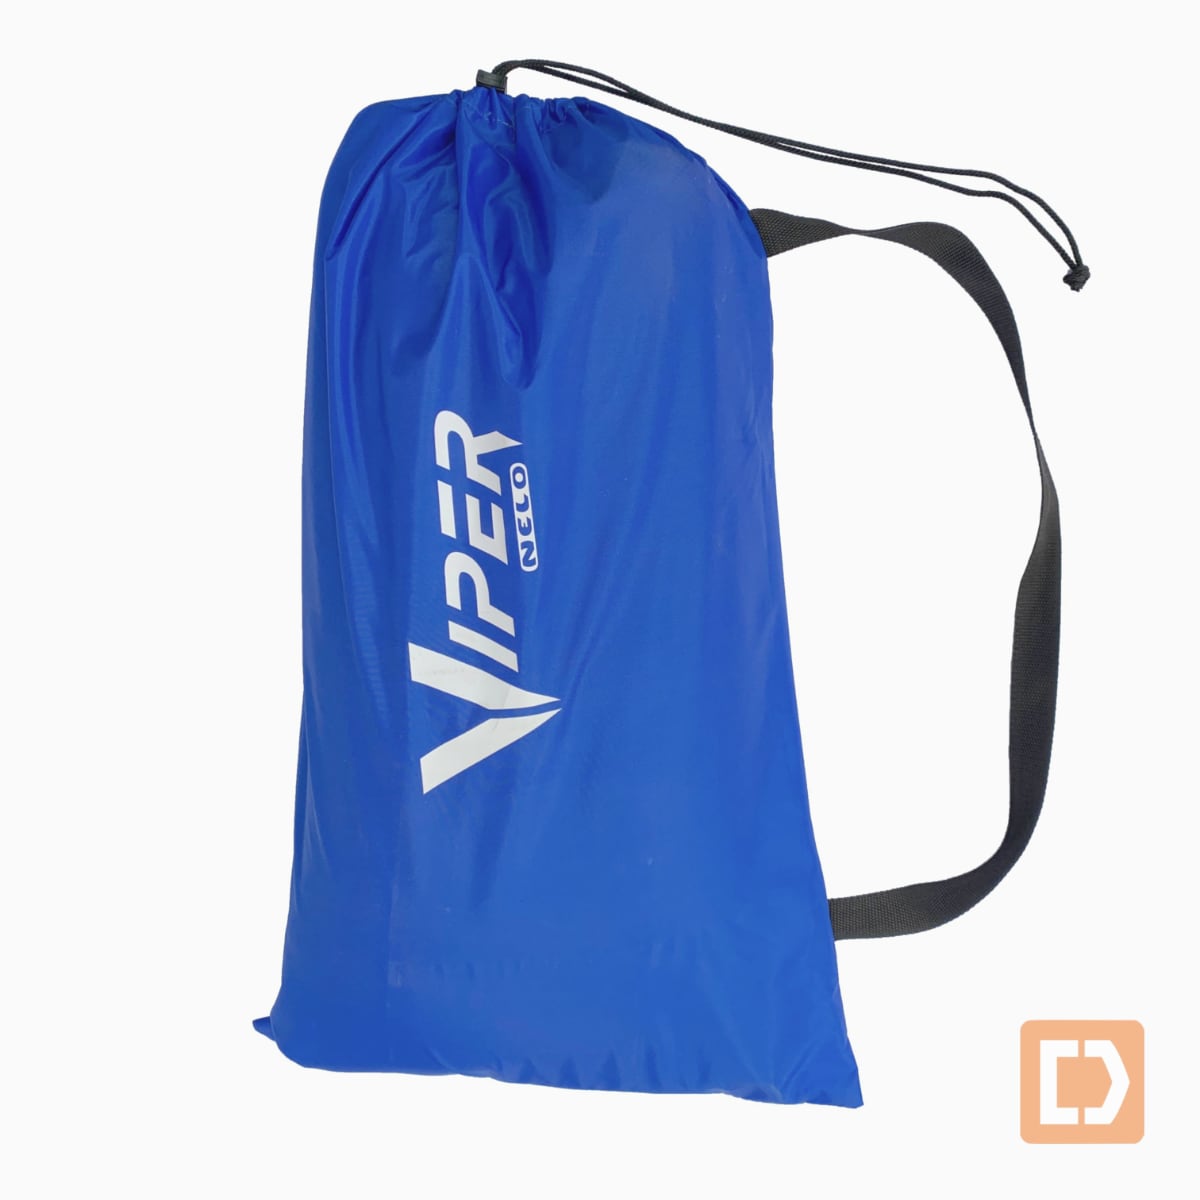 Nelo Viper Transport Cover in bag